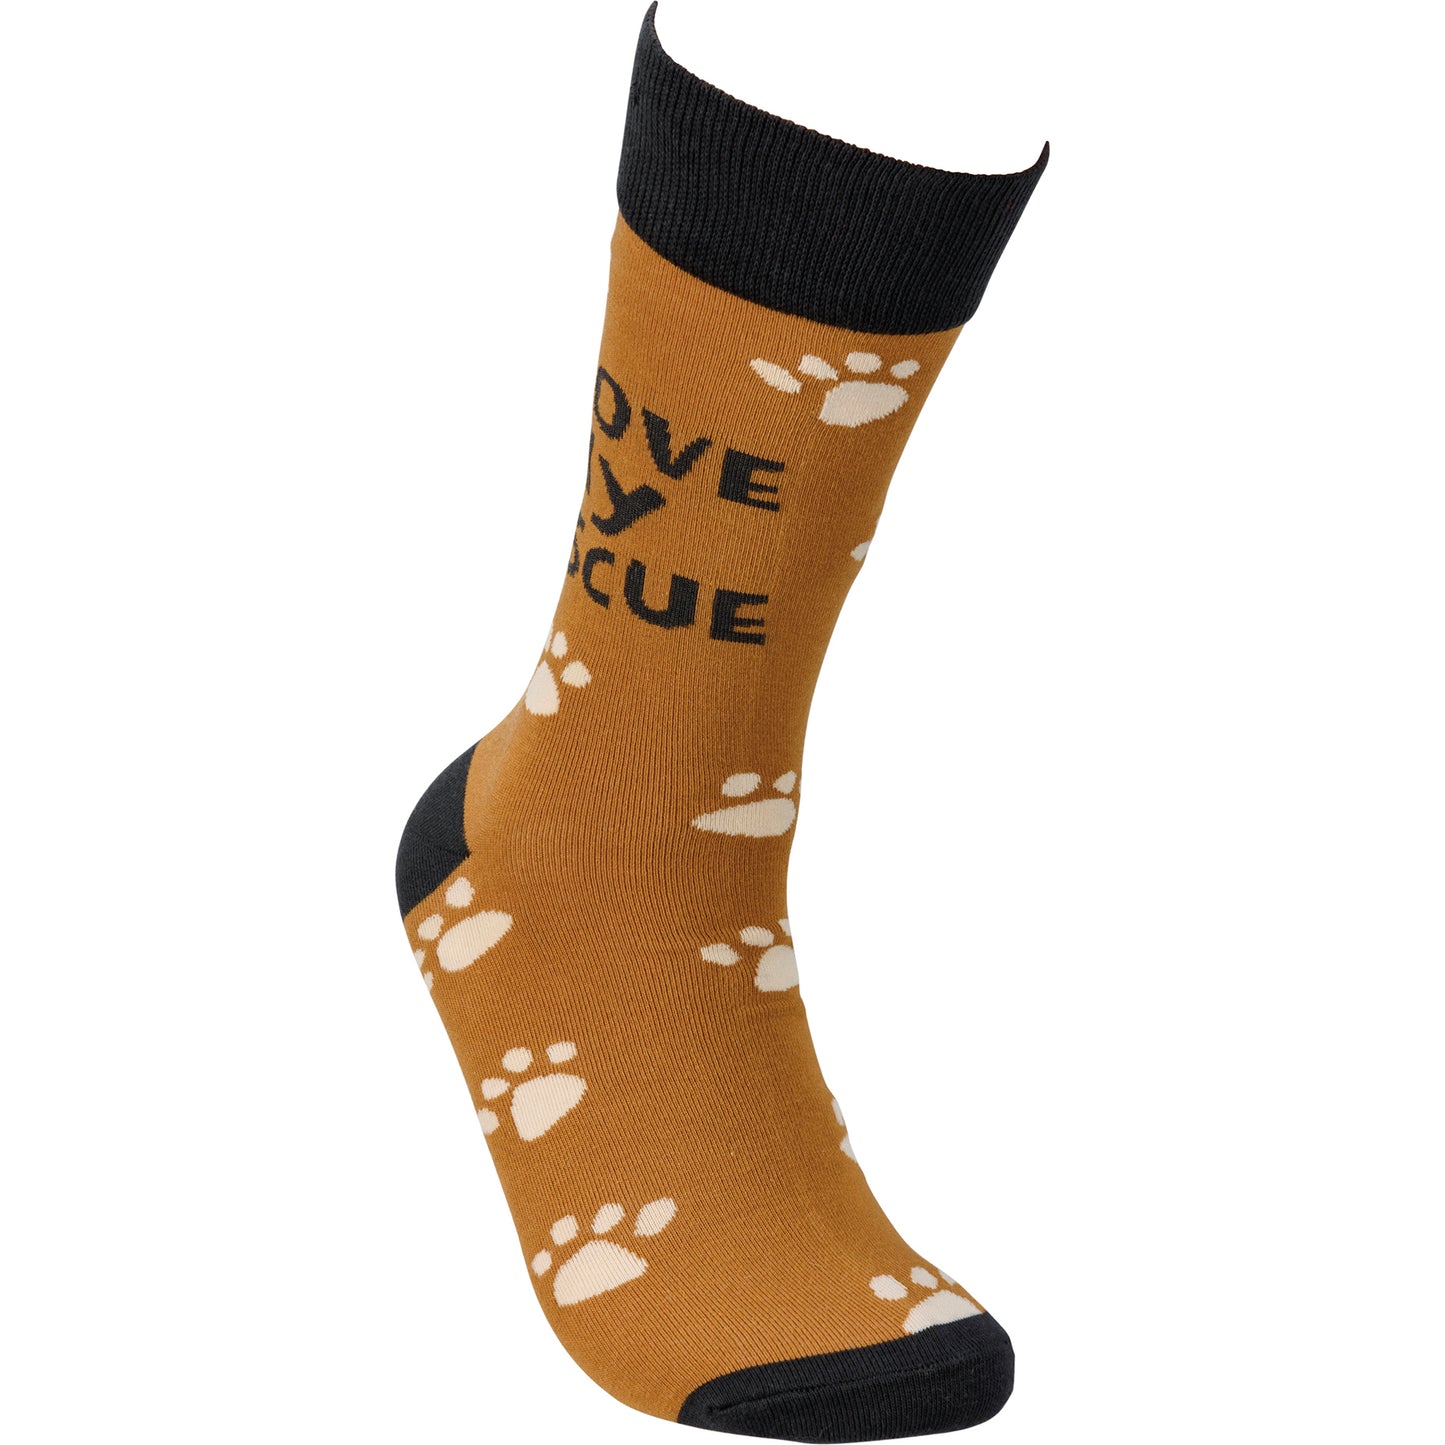 Socks - "I Love My Rescue"